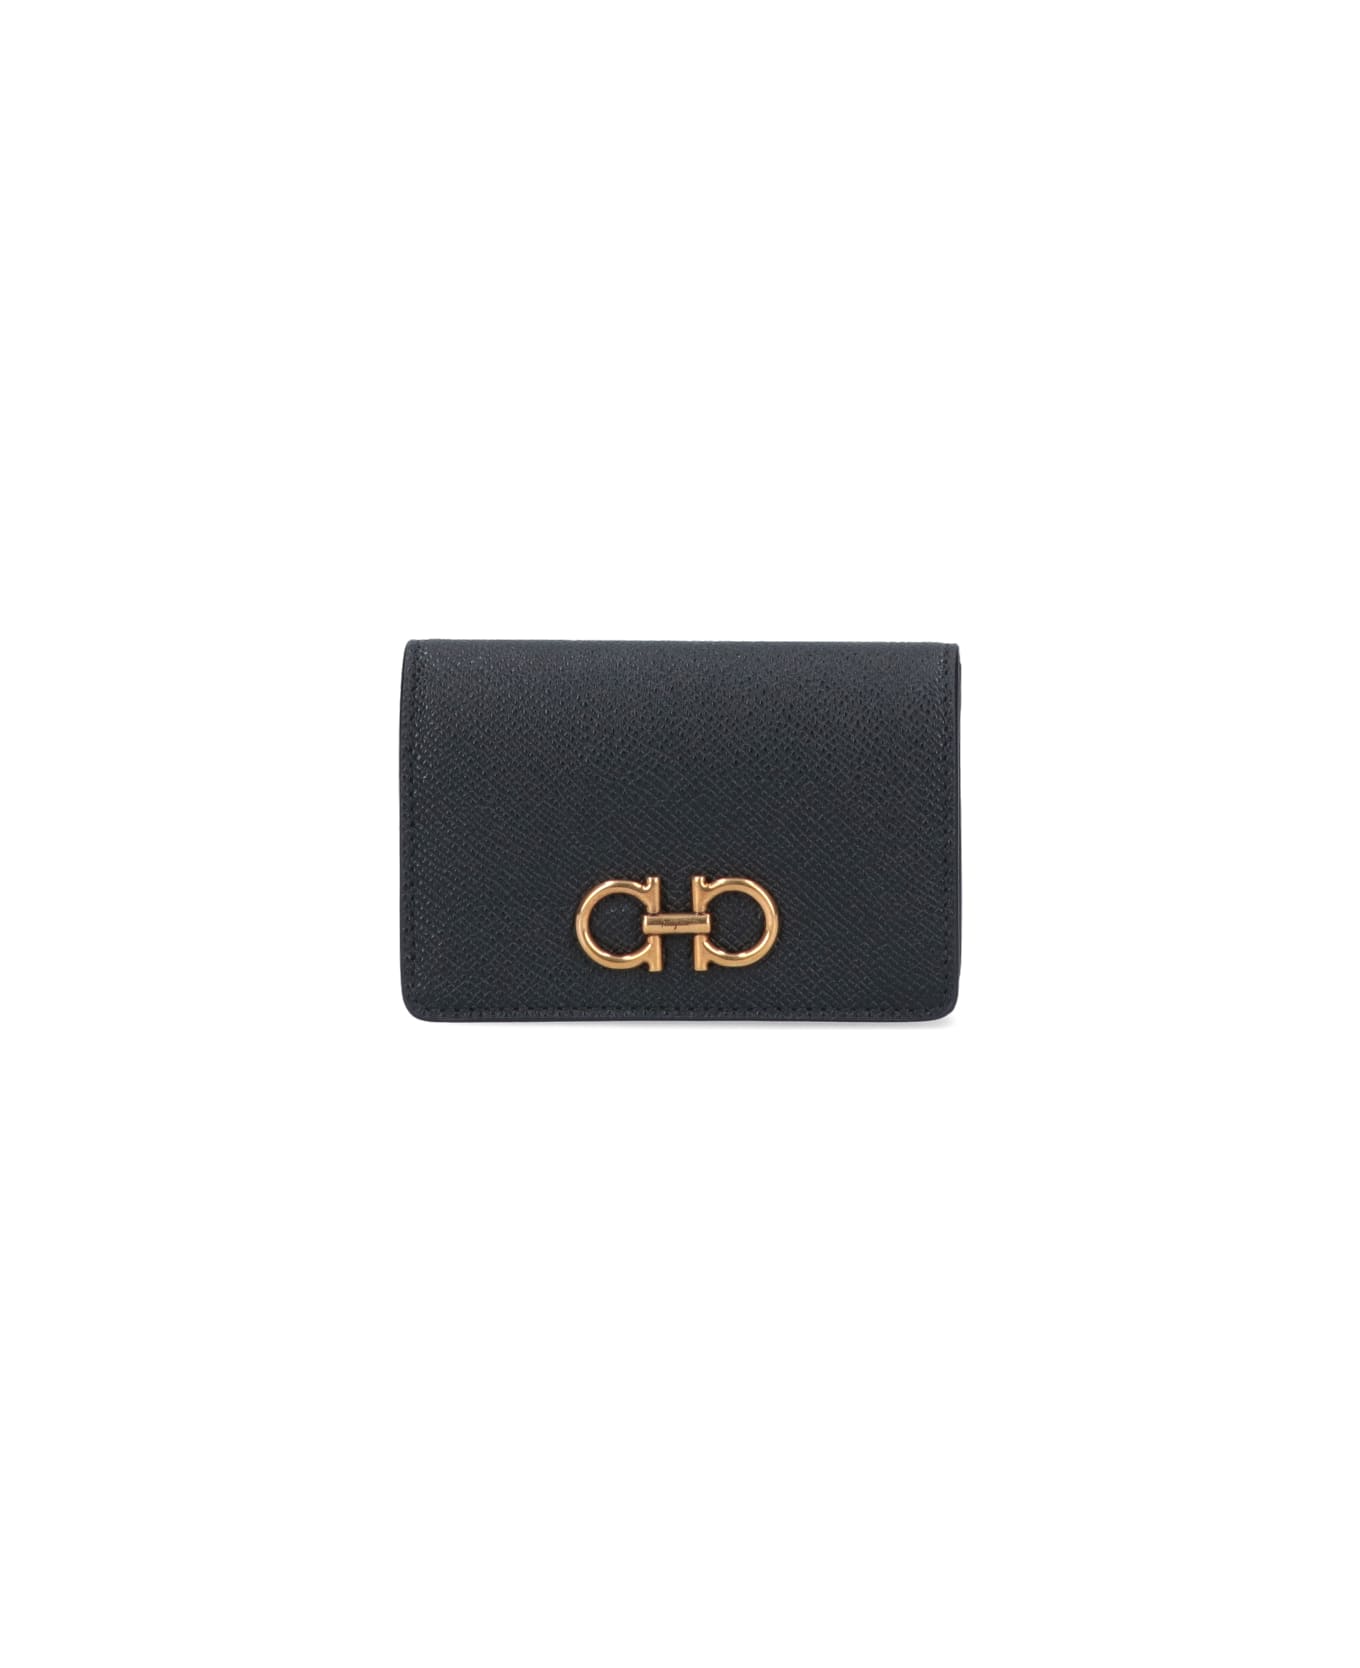 Ferragamo Wallet With Gancini - Black   財布